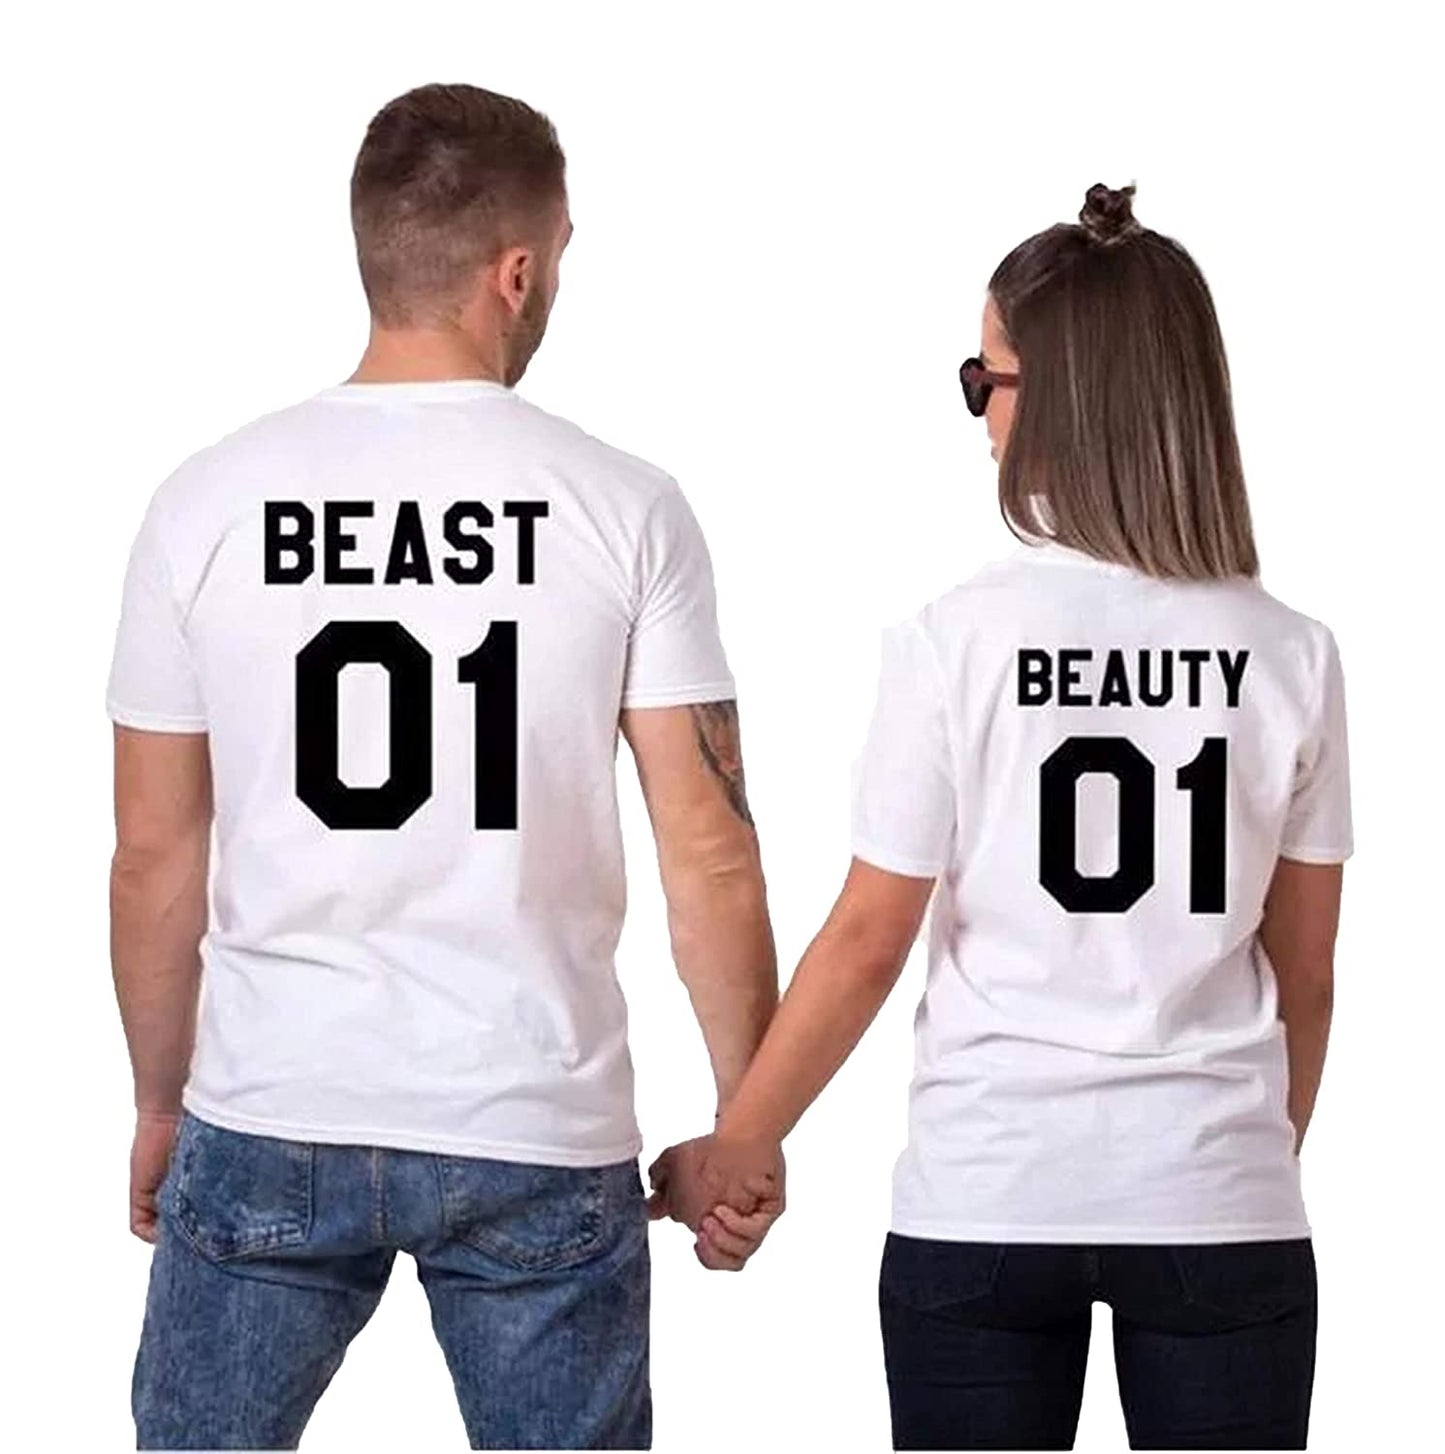 Beauty and Beast 2 matching Couple T shirts- White